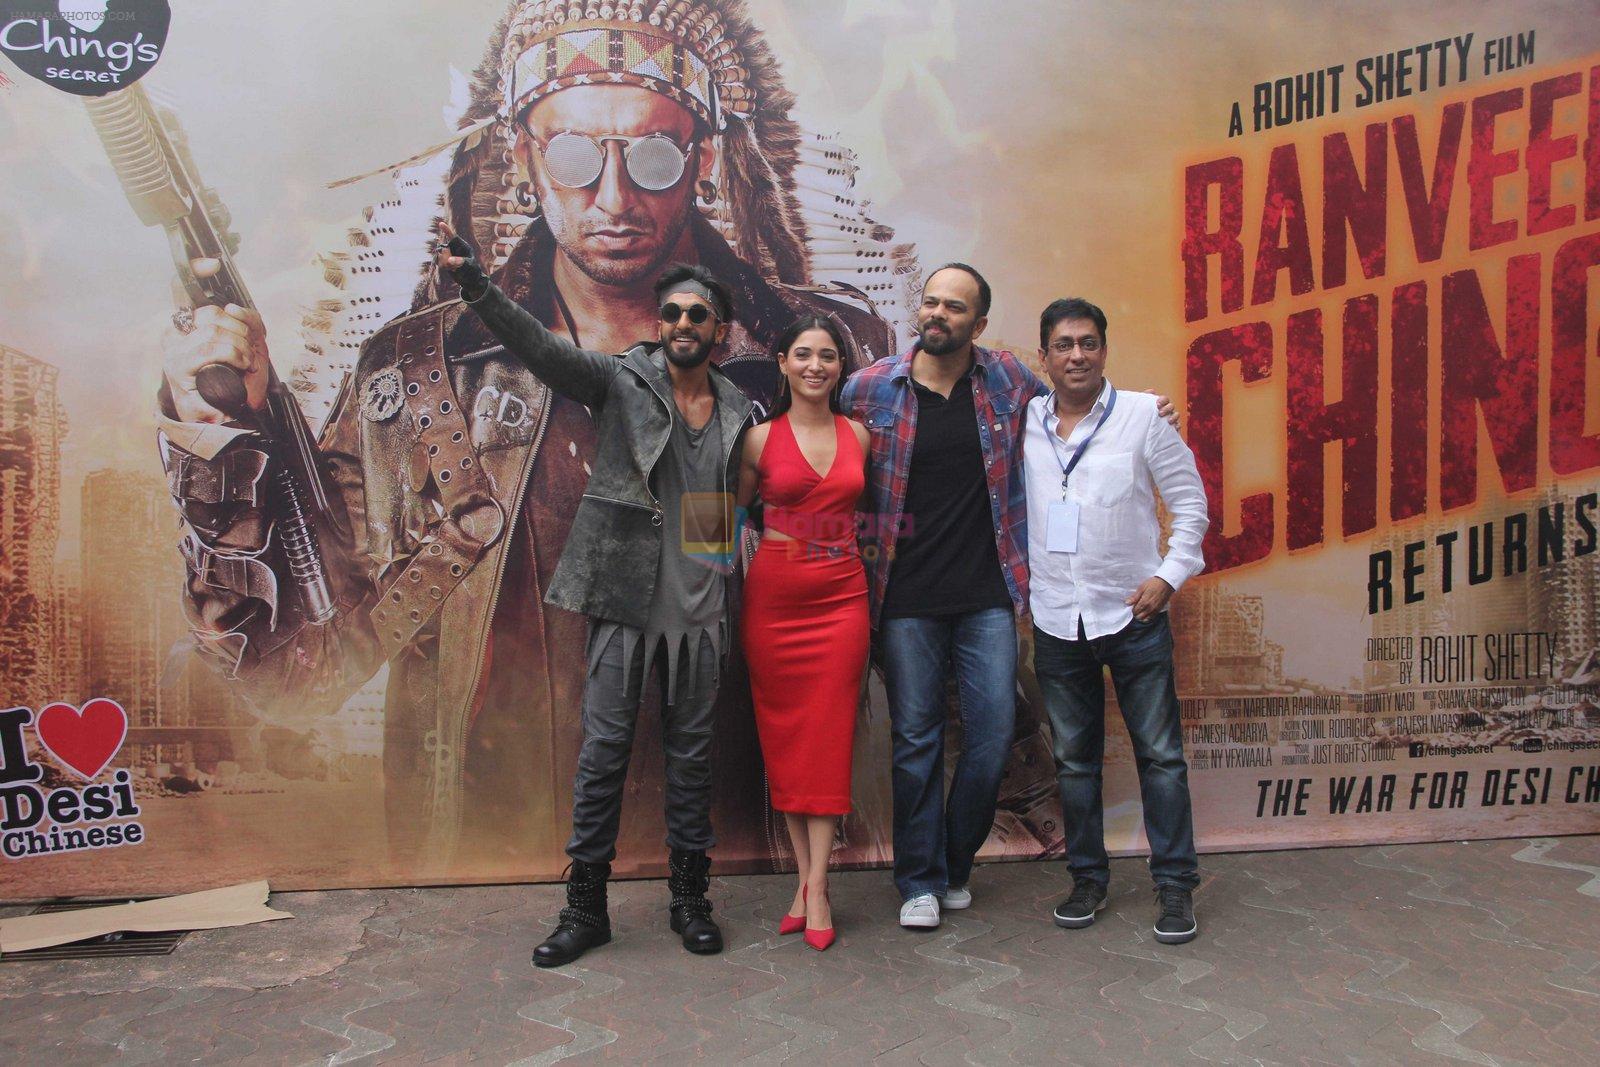 Ranveer Singh, Tamannaah Bhatia, Rohit Shetty promote Ranveer Ching Returns on 19th Aug 2016